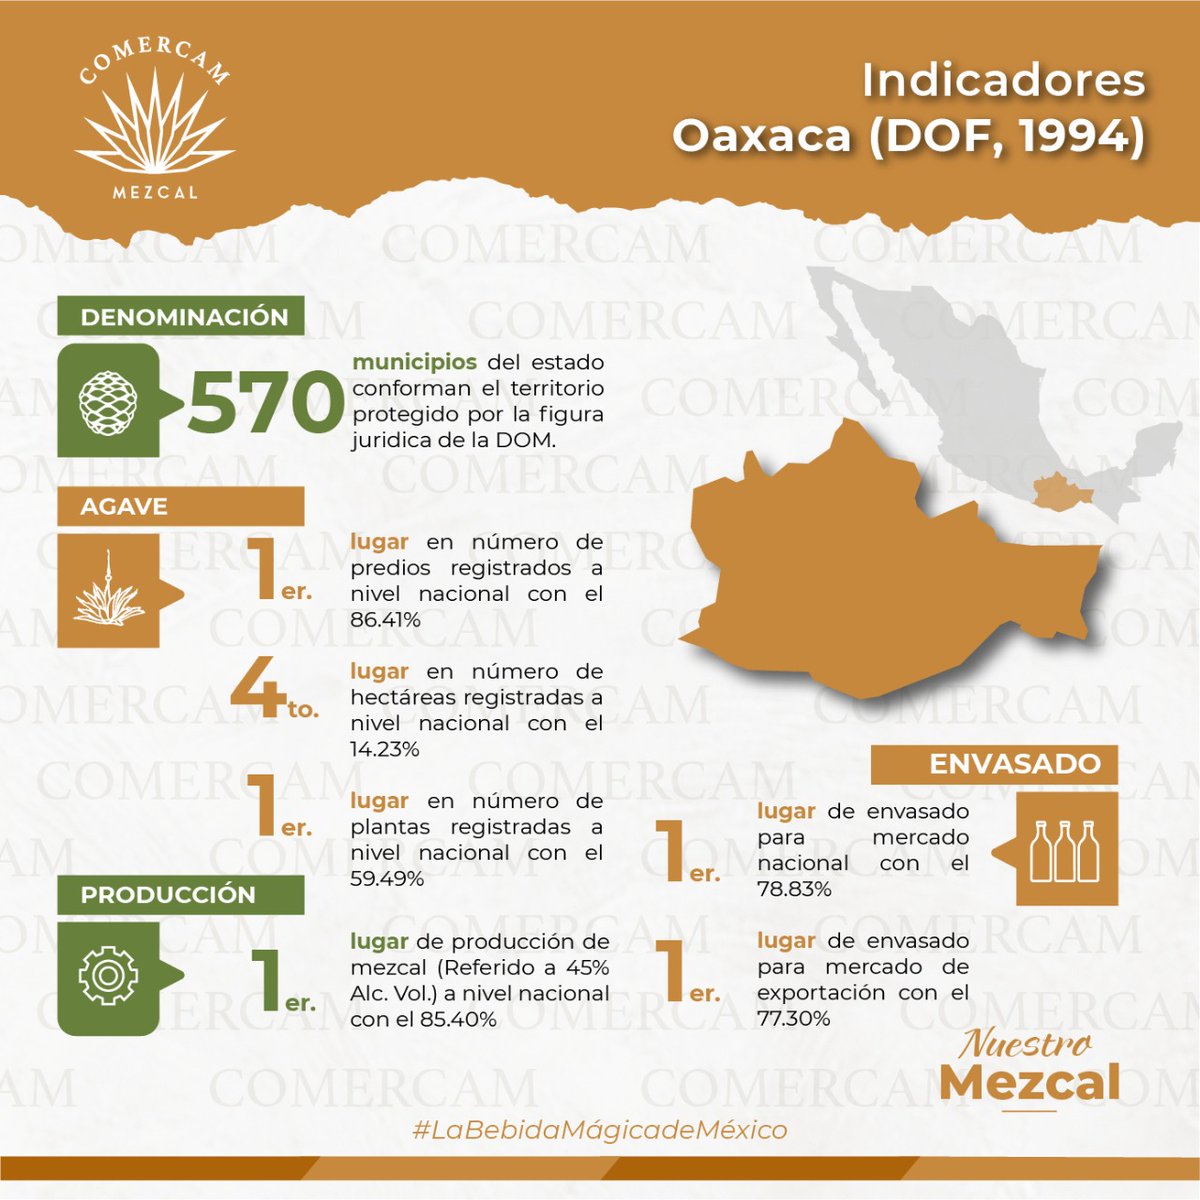 𝑵𝑼𝑬𝑺𝑻𝑹𝑶 𝑴𝑬𝒁𝑪𝑨𝑳
Estos son los indicadores del 2021 de Oaxaca en la cadena productiva Maguey-Mezcal.

#DenominacionDeOrigenMezcal #SigamosCreciendoJuntos #Mezcal #NuestroMezcal #SabíasQue  #Oaxaca #LaBebidaMágicaDeMéxico #OaxacaMezcal #MezcalOaxaqueño #MezcalDeOaxaca